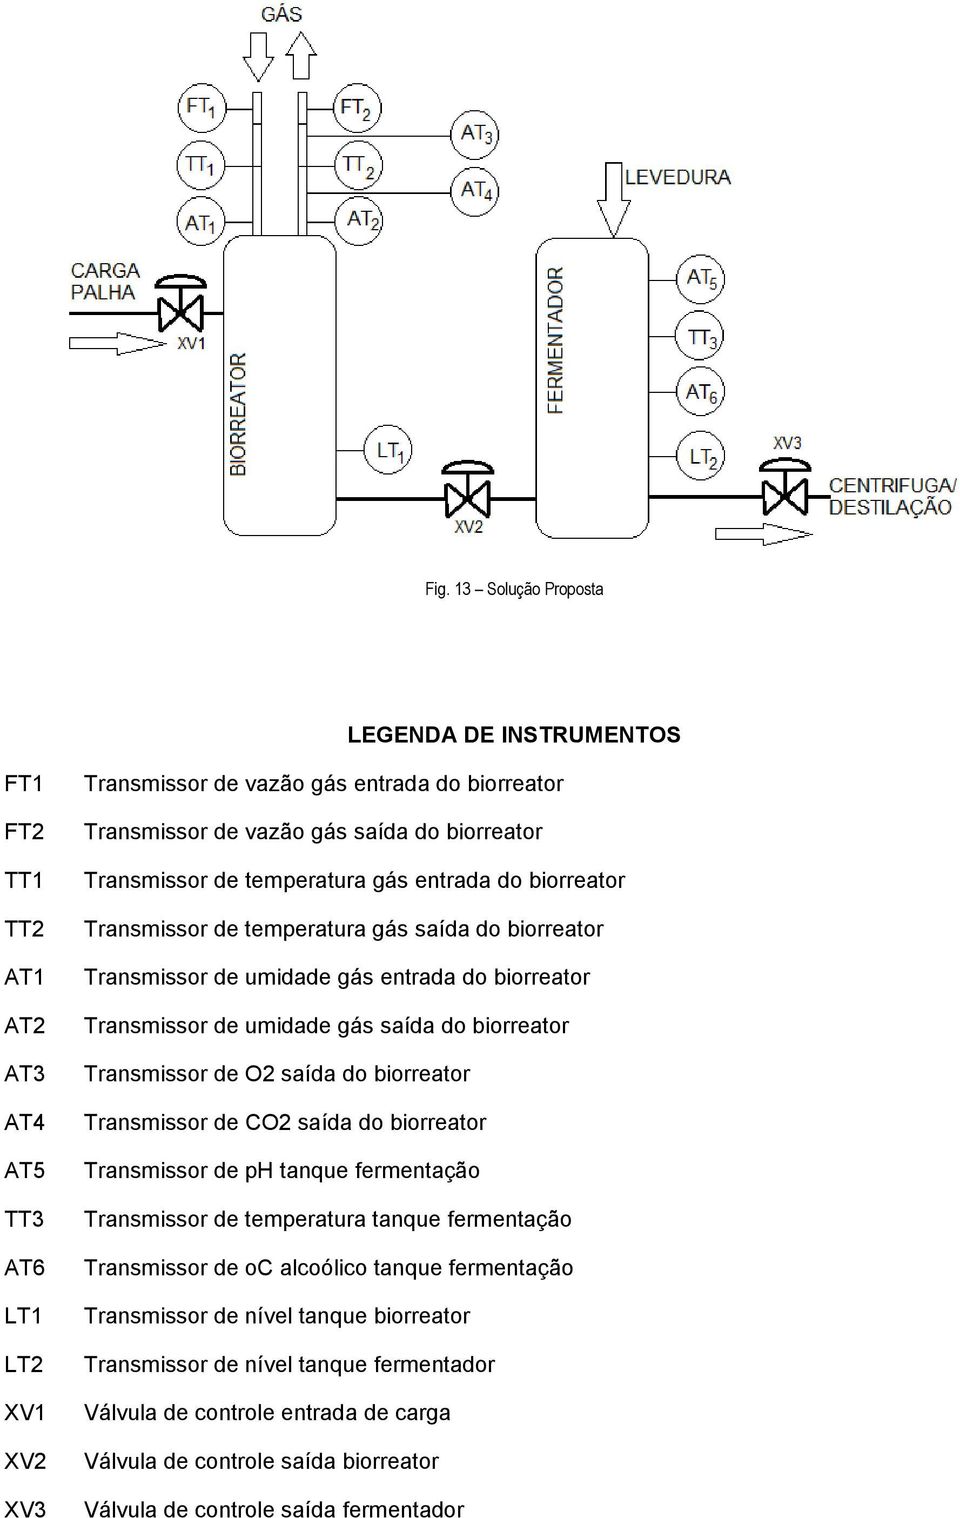 biorreator Transmissor de O2 saída do biorreator Transmissor de CO2 saída do biorreator Transmissor de ph tanque fermentação Transmissor de temperatura tanque fermentação Transmissor de oc alcoólico